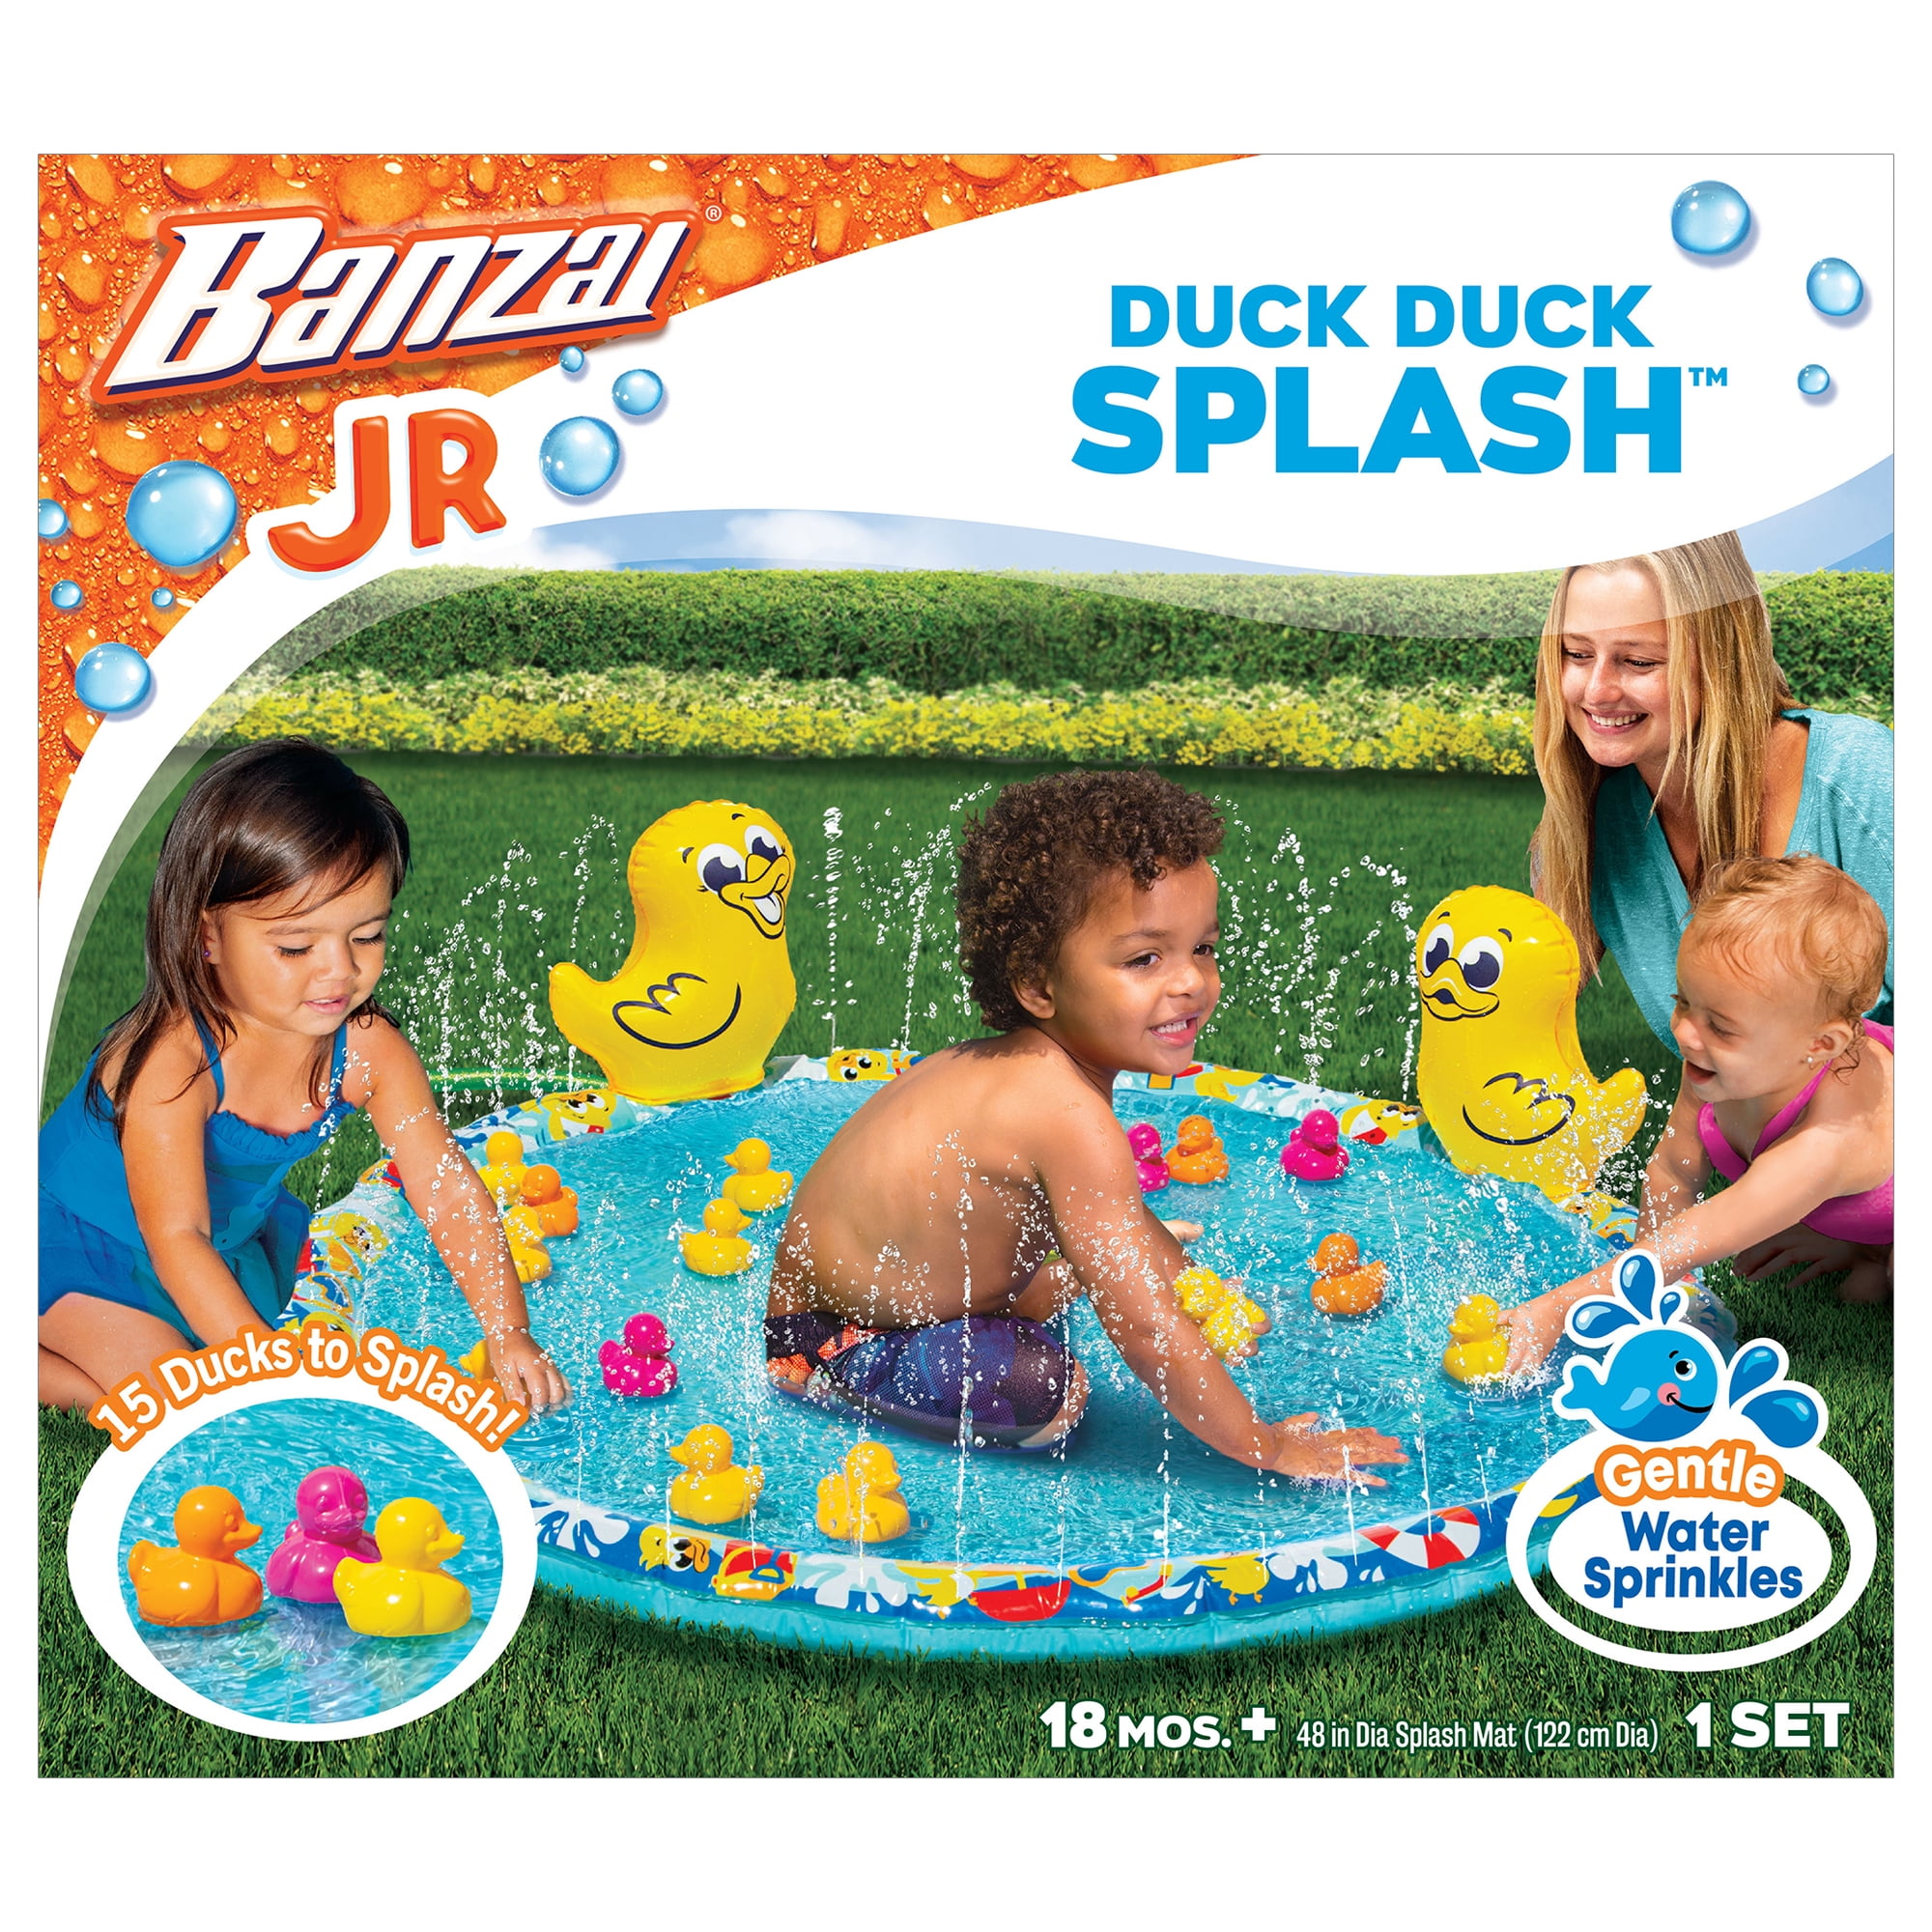 Banzai Jr. Duck Duck Splash 48 Outdoor Summer Water Play Mat